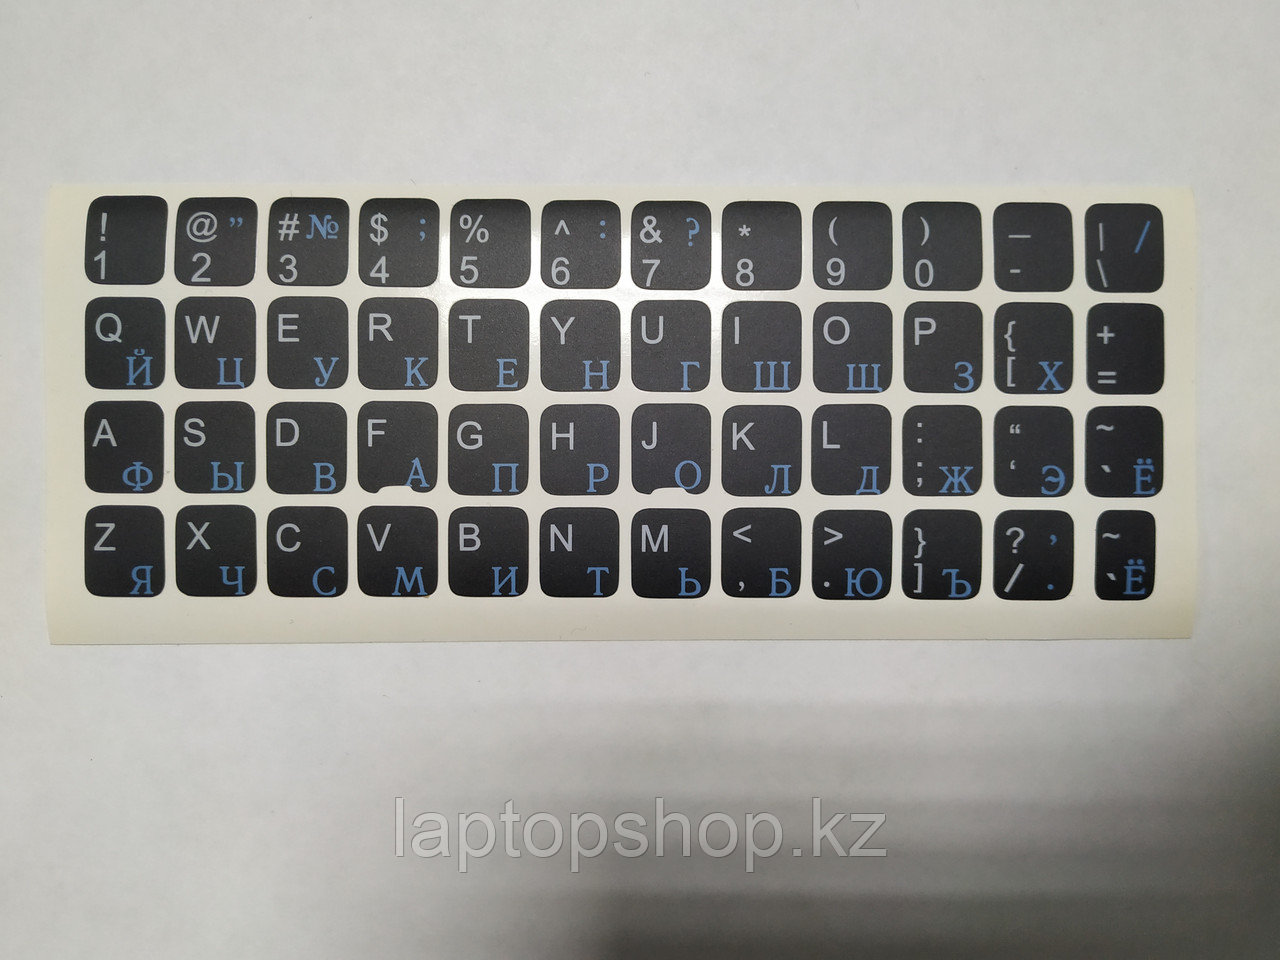 Наклейки на клавиатуру не стираемые (краска ПОД ПЛЕНКОЙ) черный фон не прозрачные